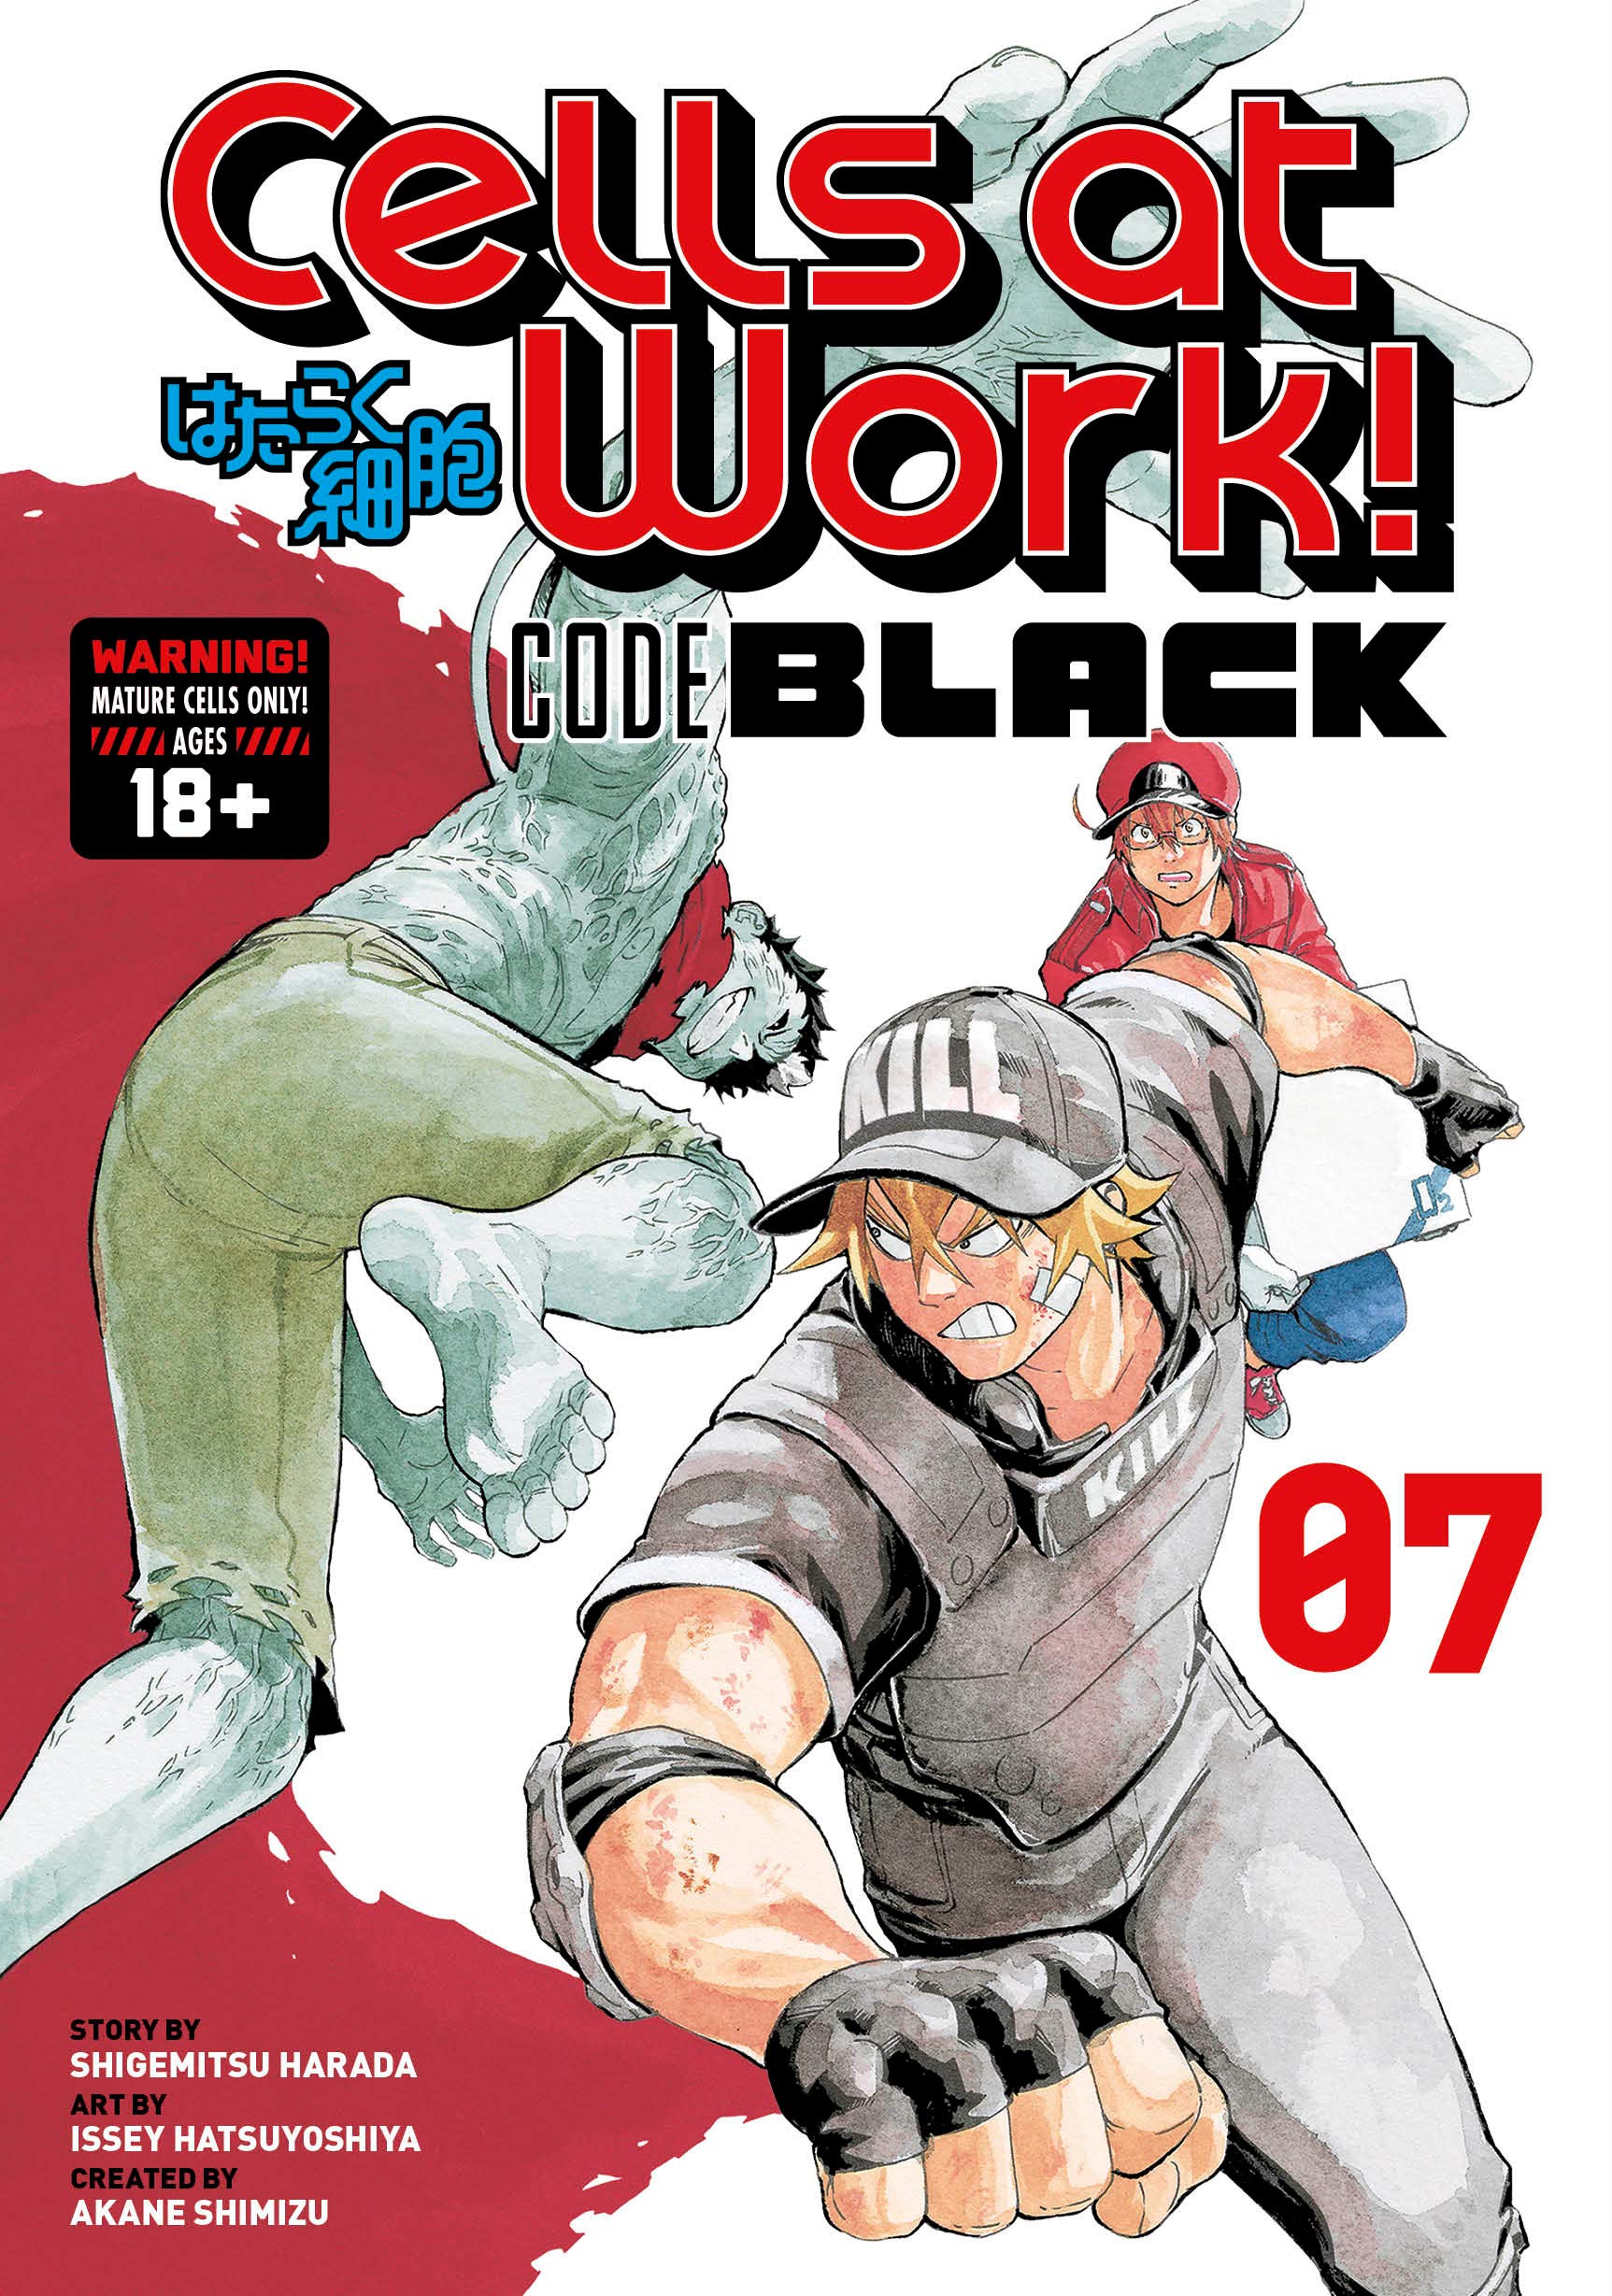 Hataraku Saibou BLACK (Cells at Work! Code Black)